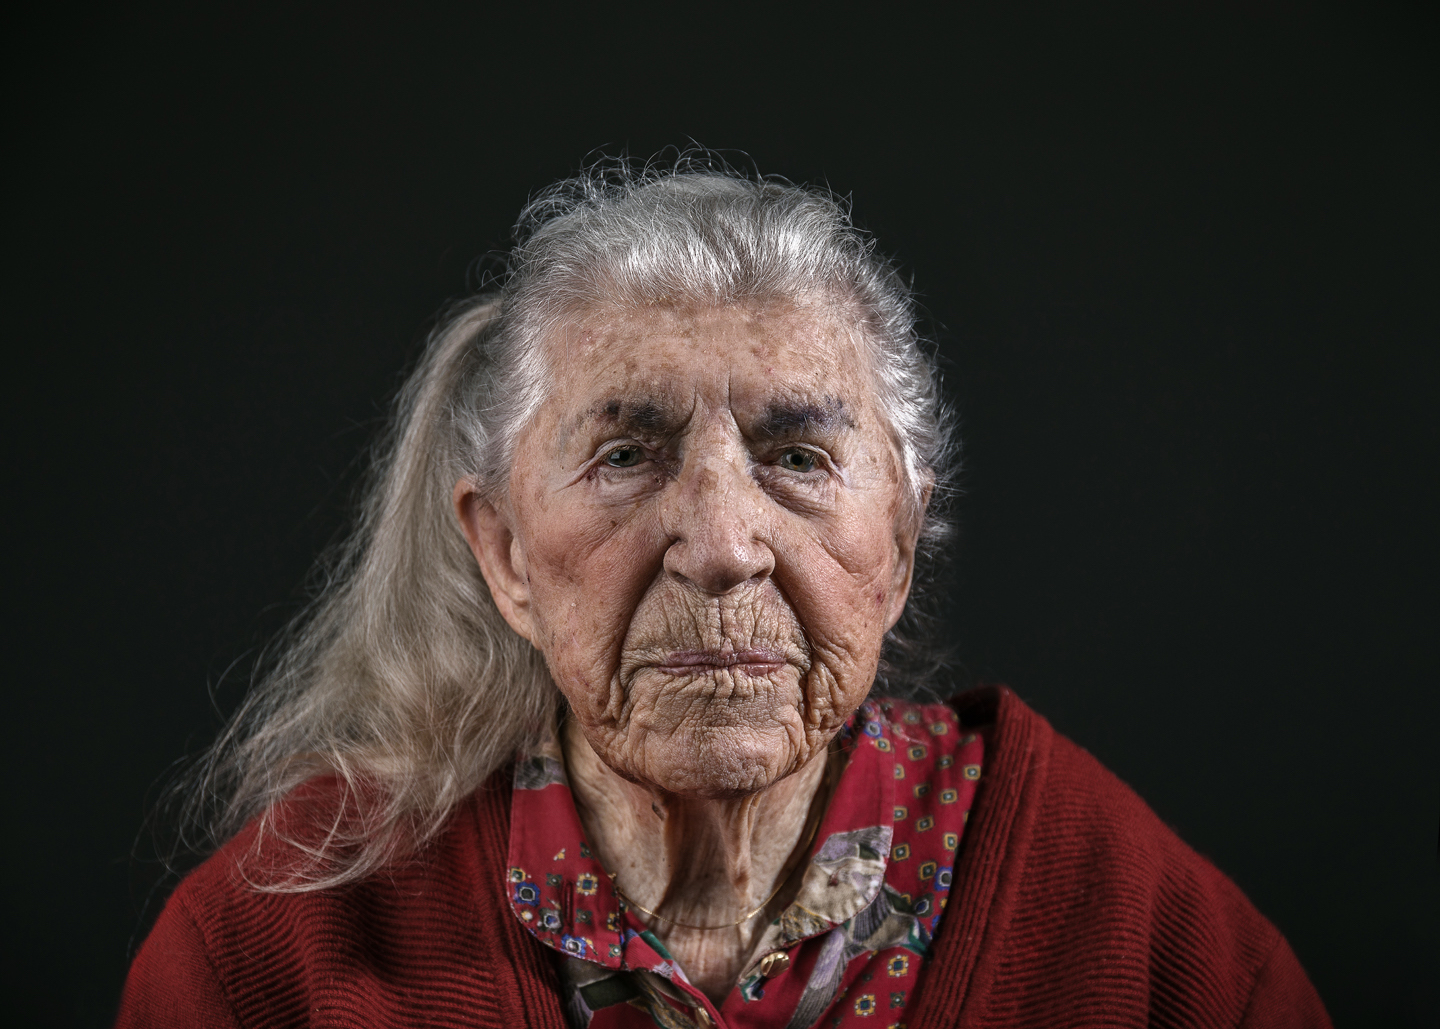 Kvinna från vernissage "Det vackra åldrandet"